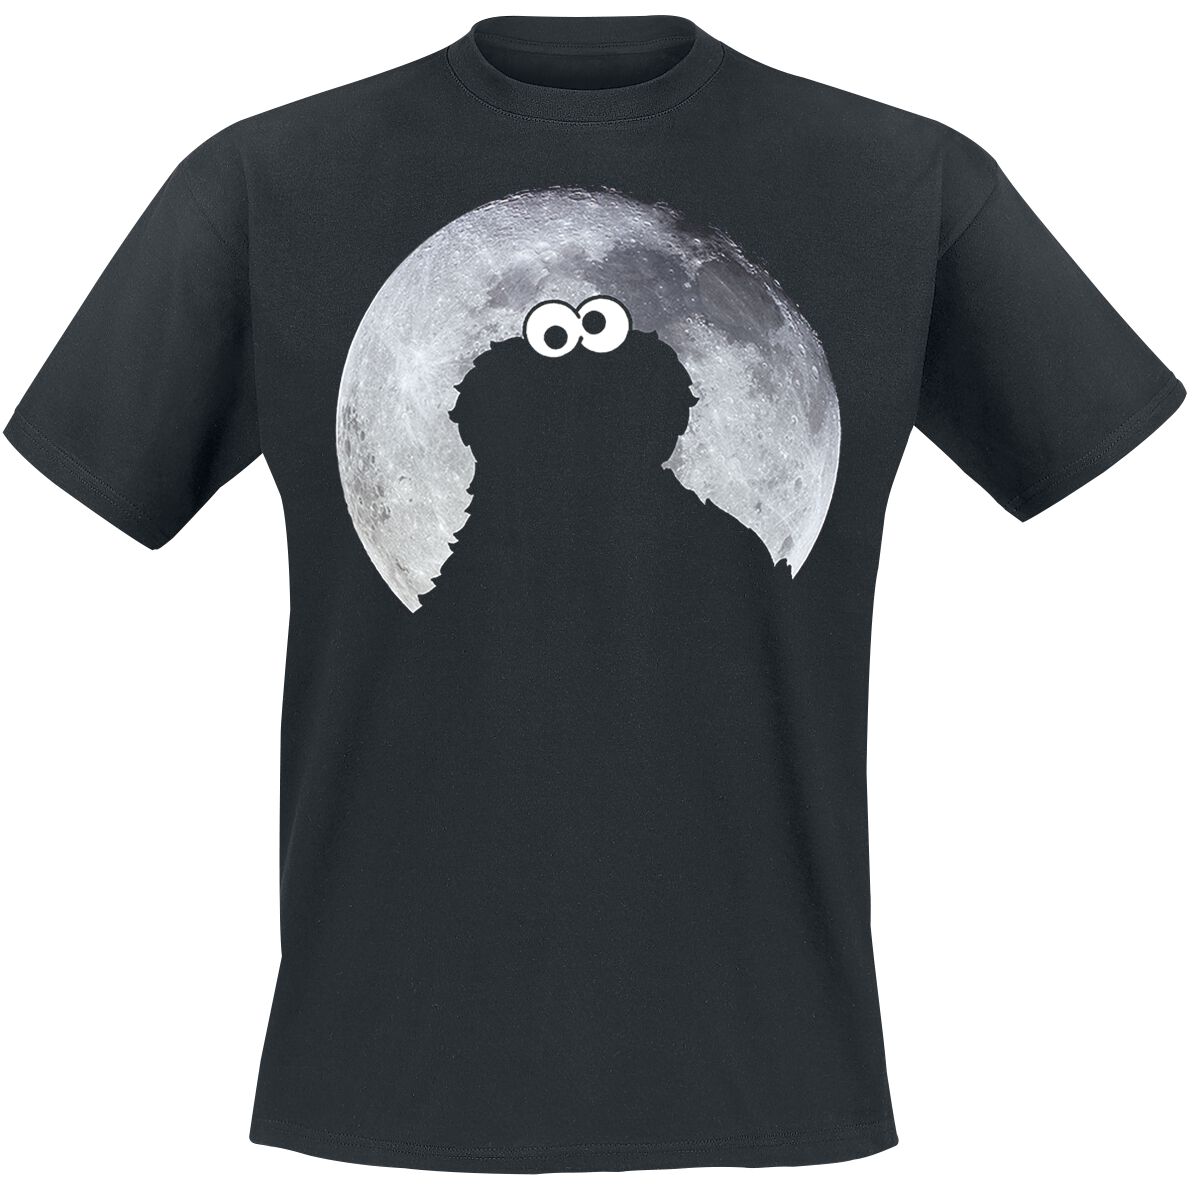 Sesamstraße T-Shirt - Cookie Monster - Moonnight - S - für Männer - Größe S - schwarz  - Lizenzierter Fanartikel